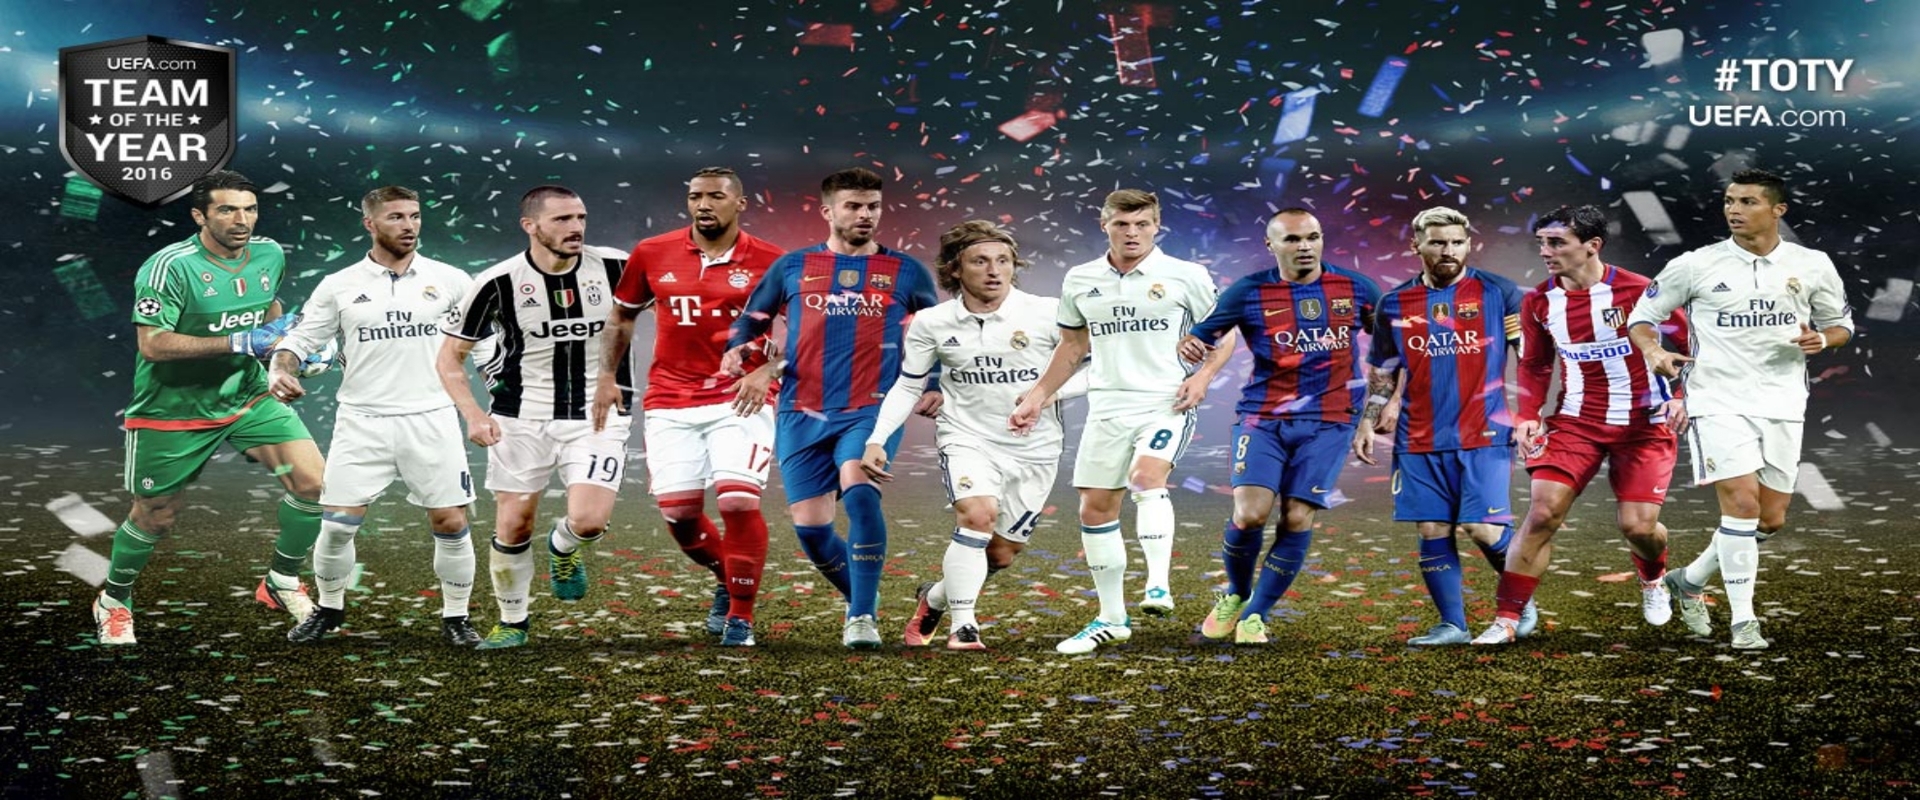 FIFA17: Mától érkeznek a Team of the Season játékosok!